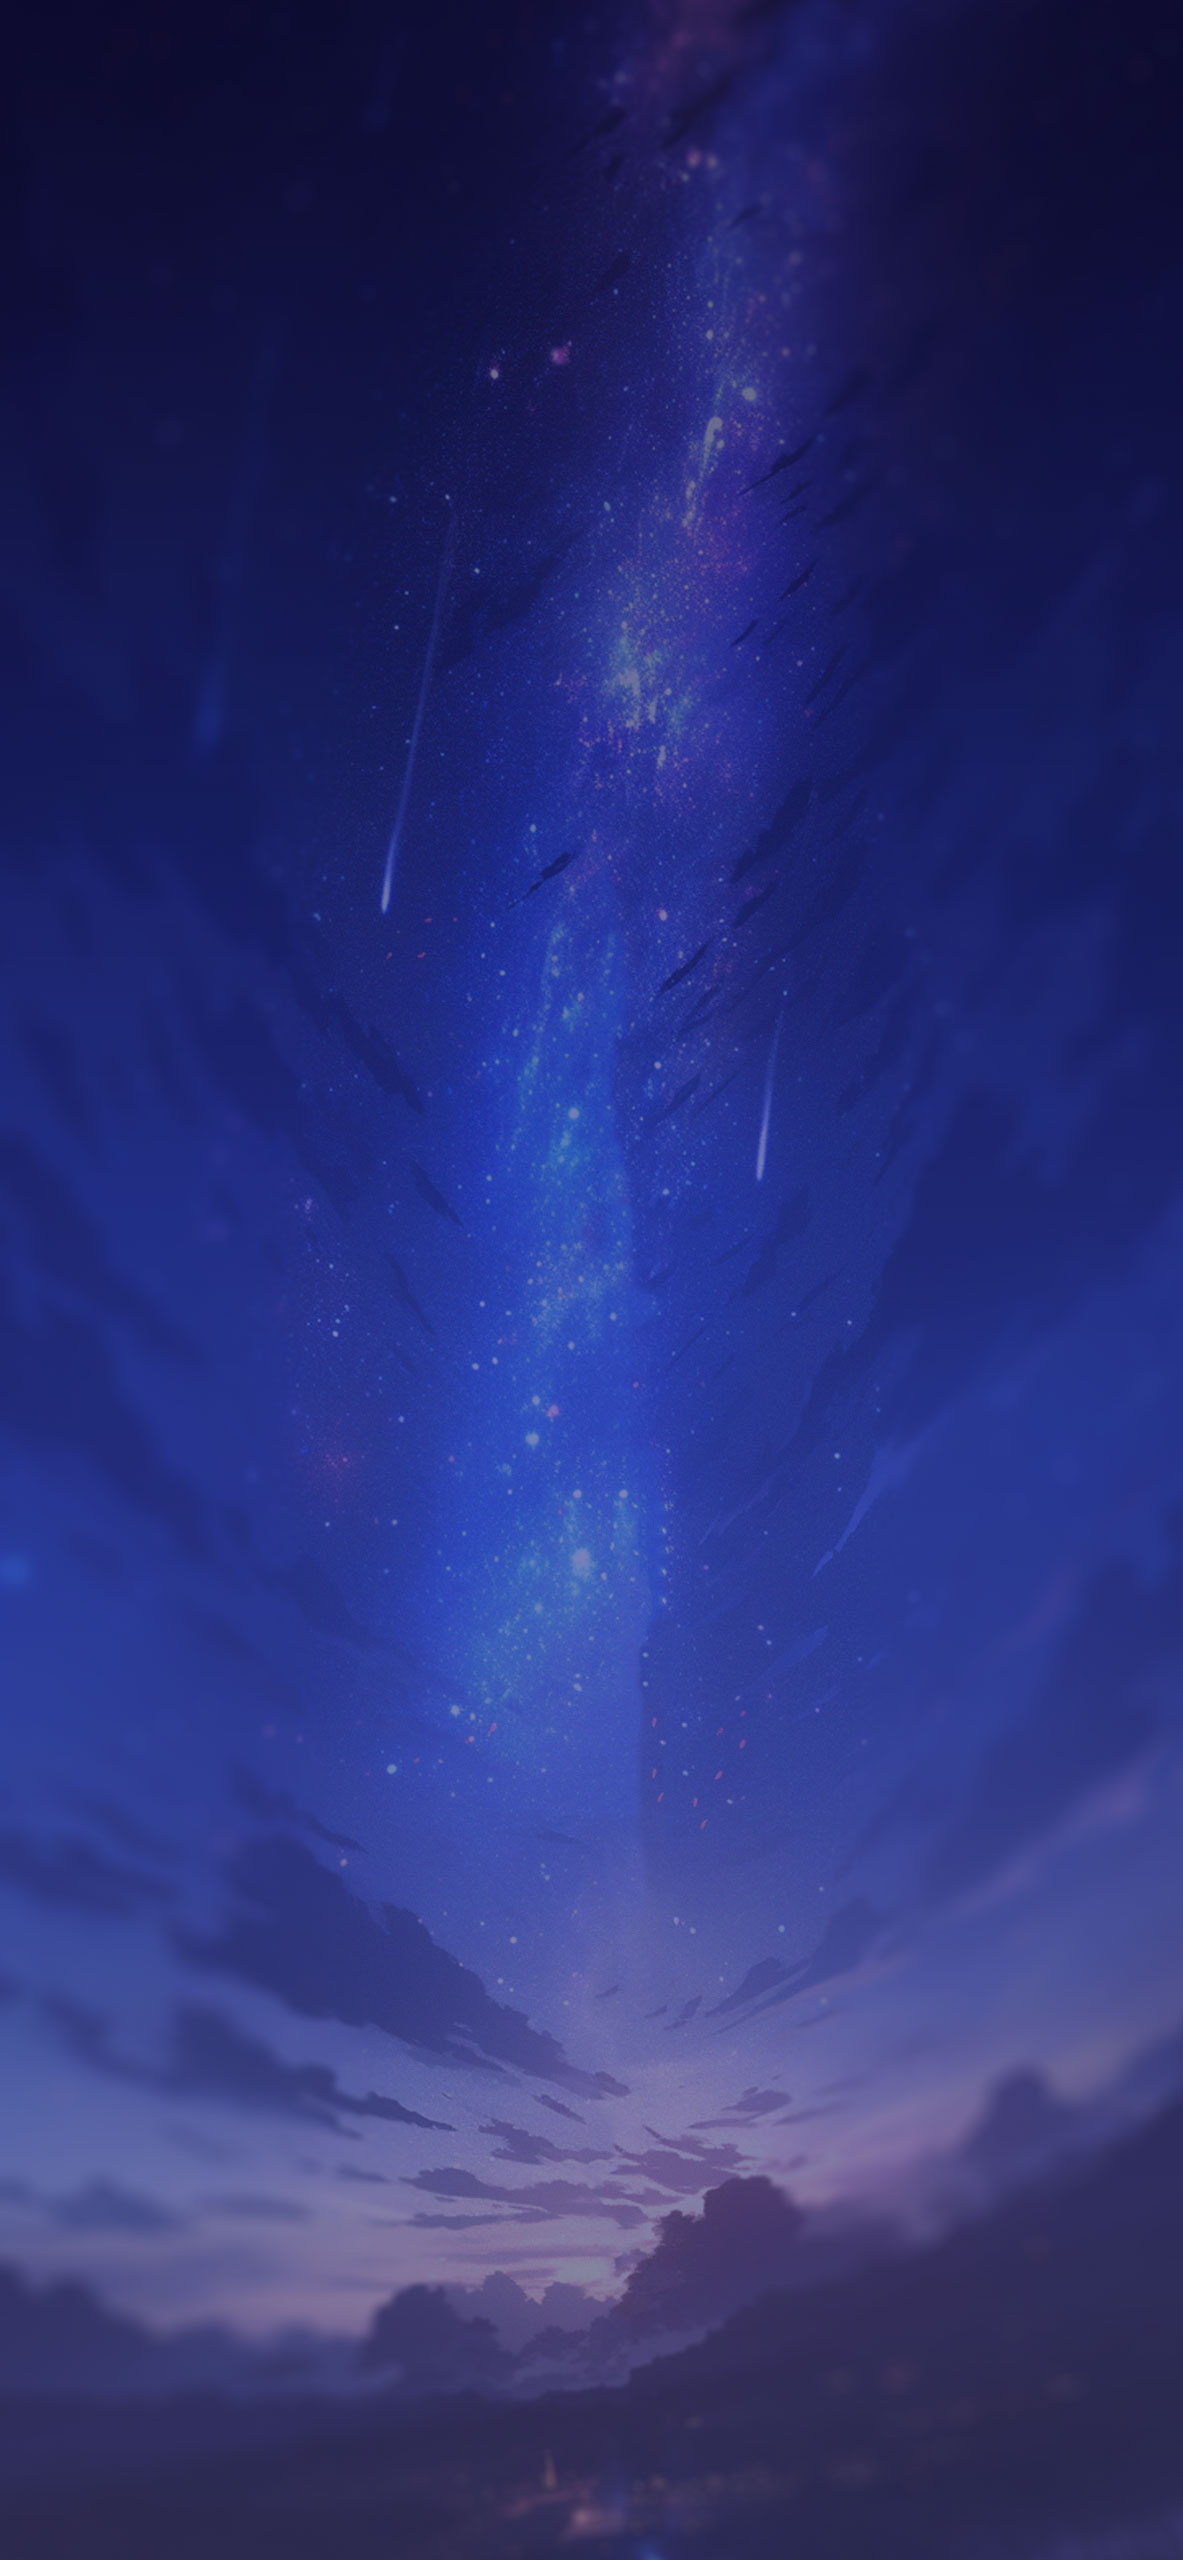 Ocean Pier under Milky Way Sky 4K wallpaper download